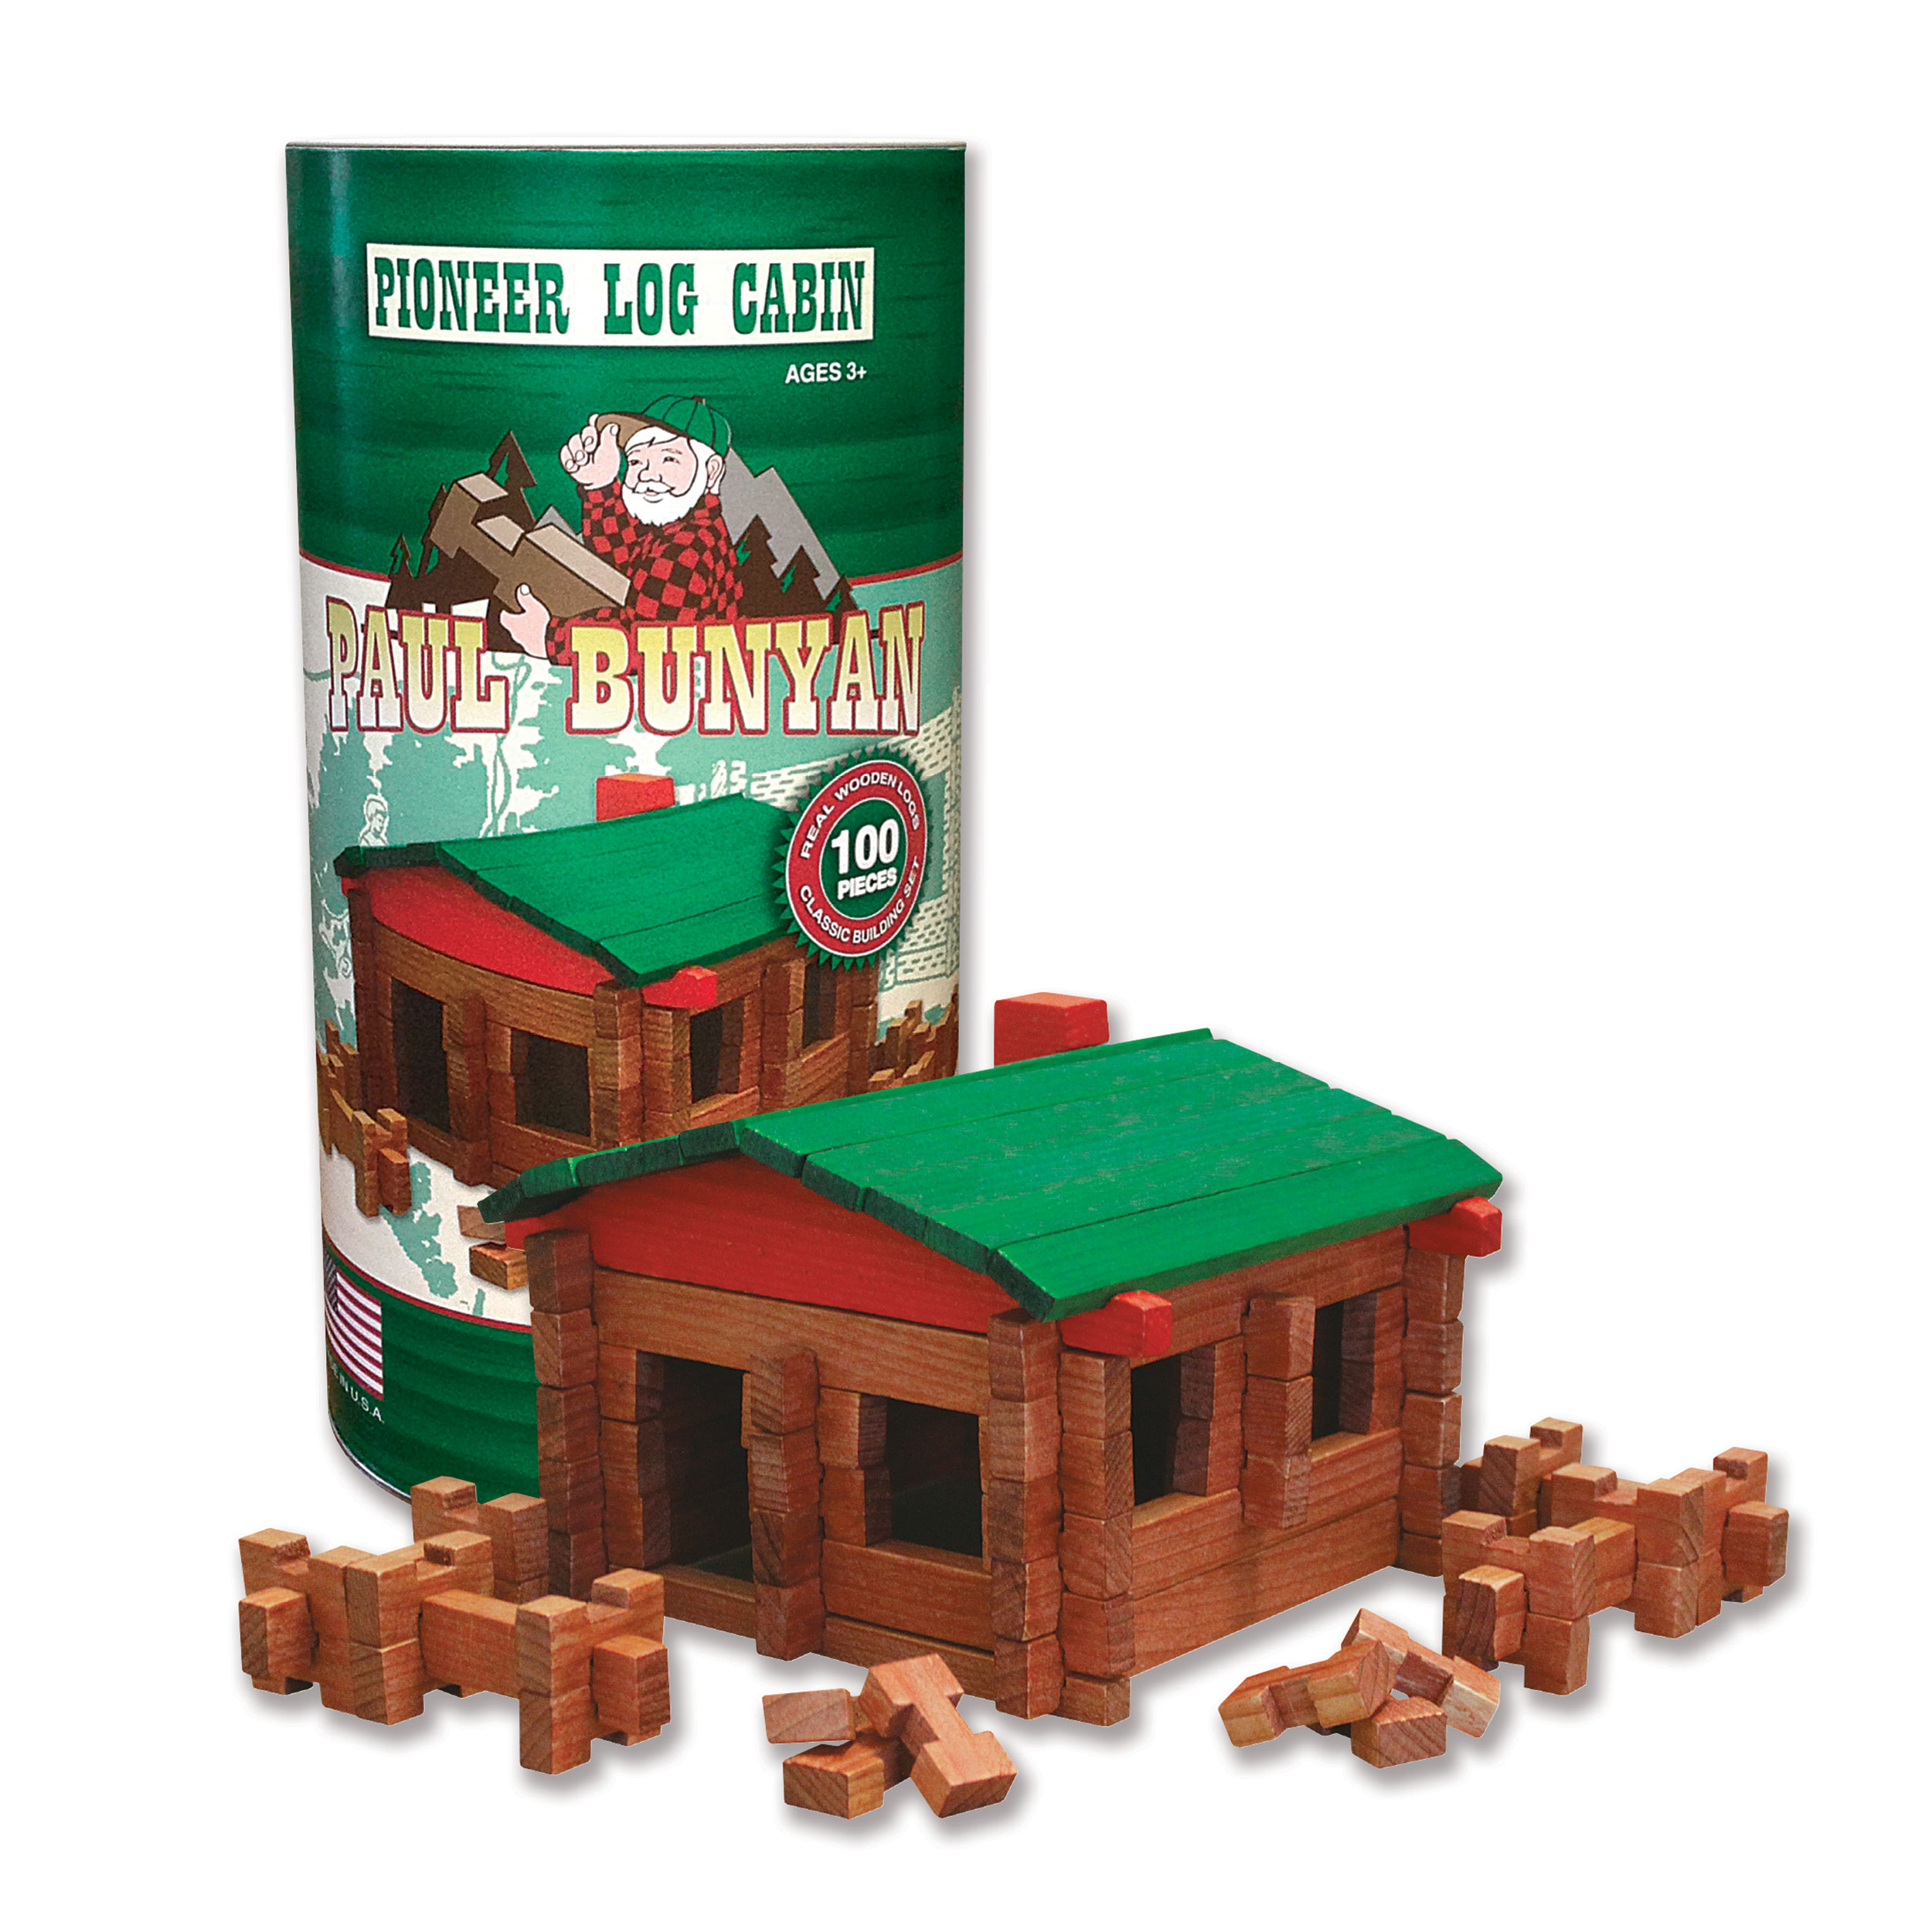 Paul Bunyan Log Cabin 100 Pc Set